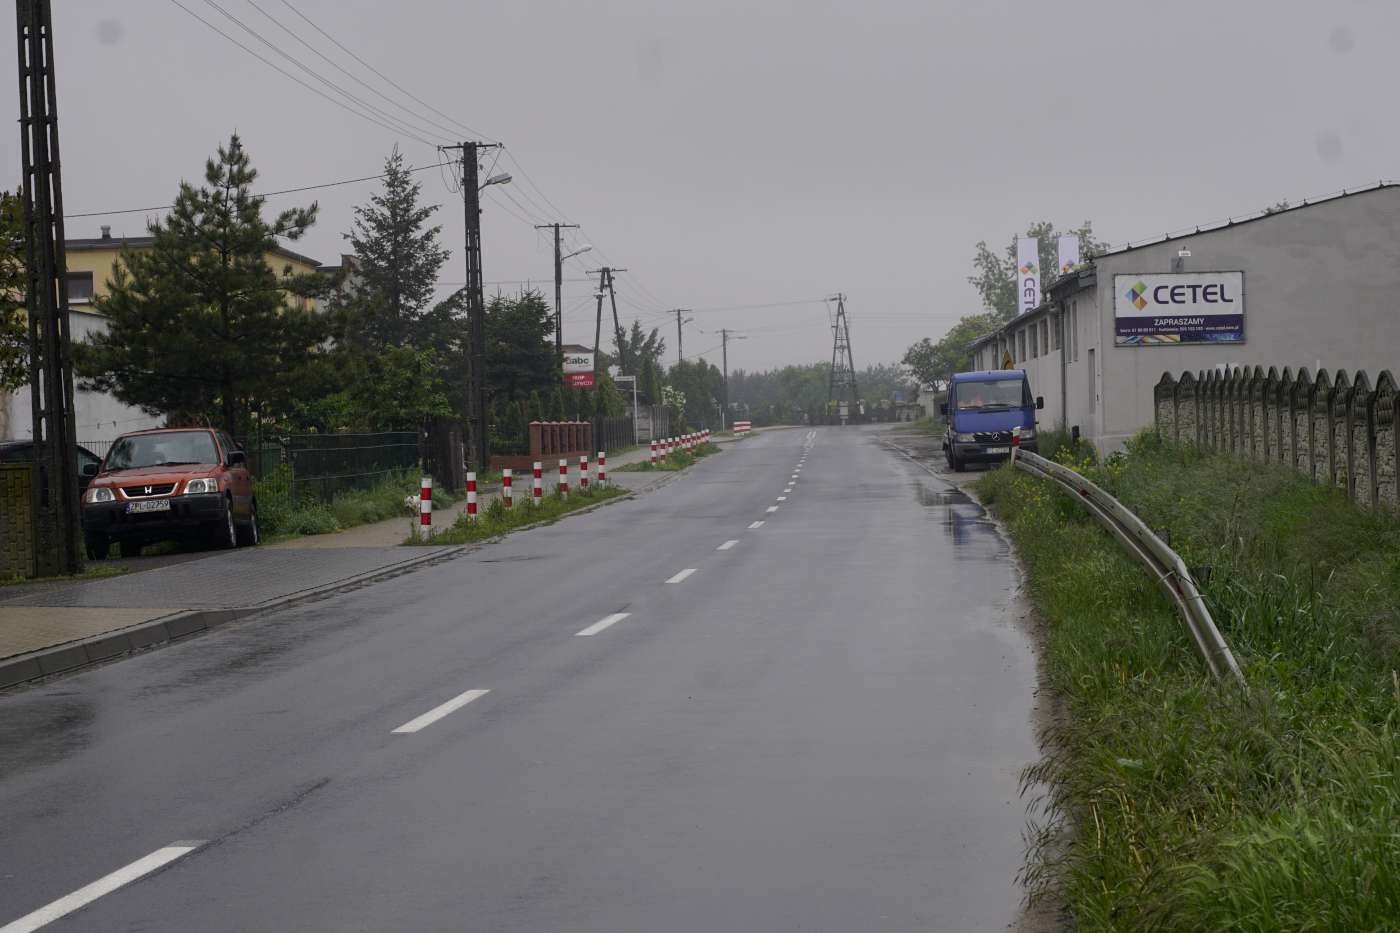 Ministerstwo Infrastruktury wycofało zgodę na dofinansowanie dróg w powiecie poznańskim, gostyńskim, szamotulskim, w gminach Tarnowo Podgórne i Czer